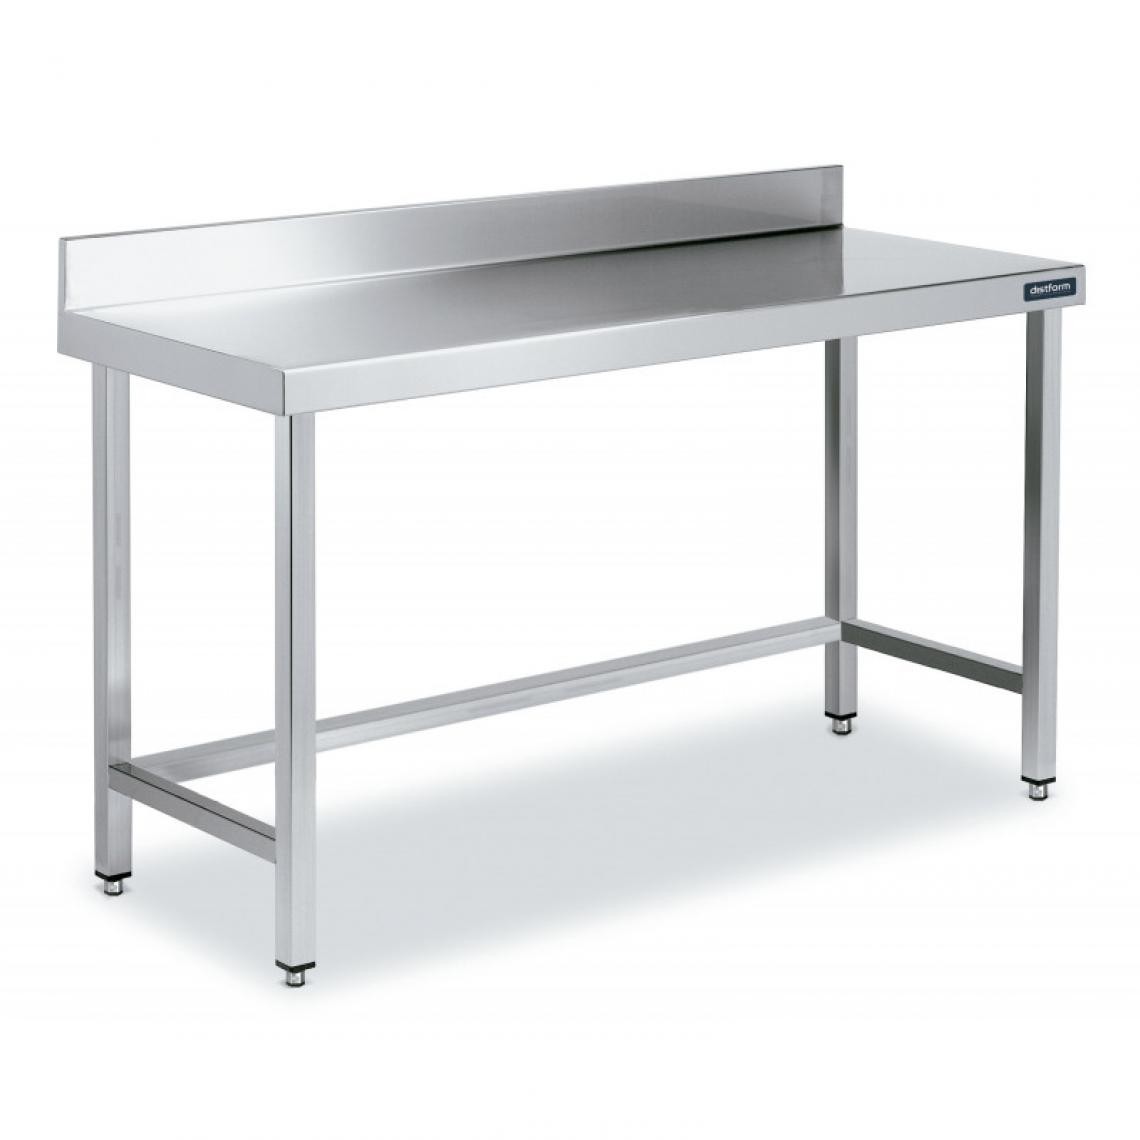 DISTFORM - Table Adossée en Inox avec Renforts Profondeur 700 mm - Distform - Acier inoxydable1500x700 - Tables à manger